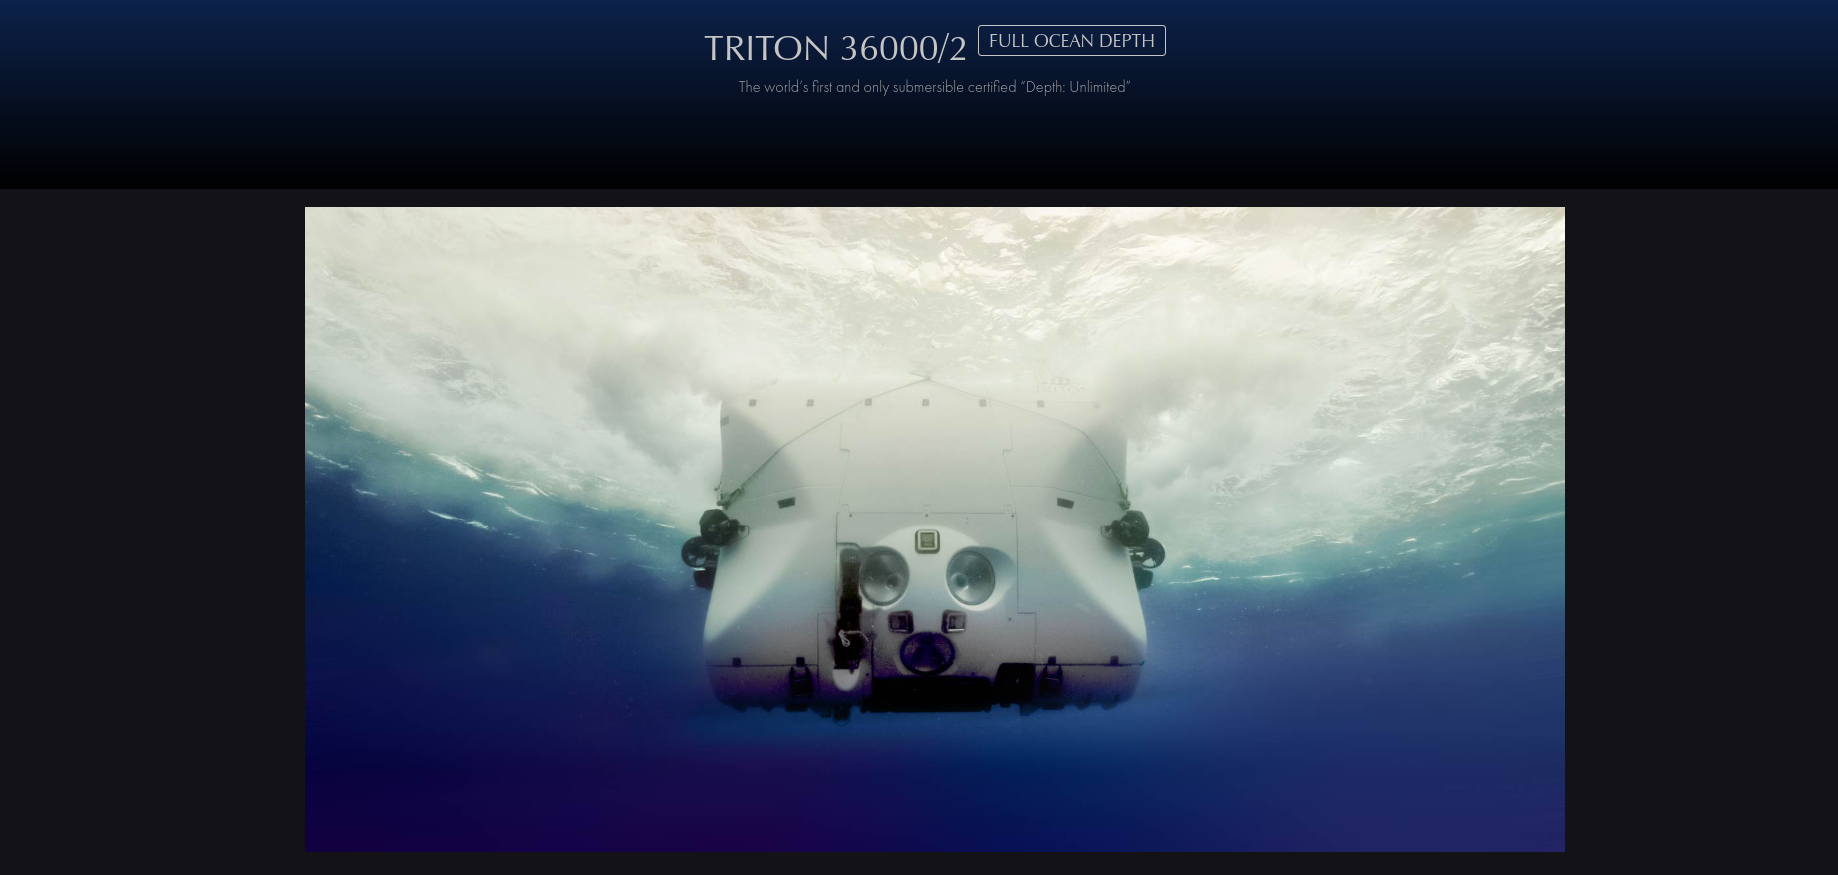 Triton 36000/2 website page